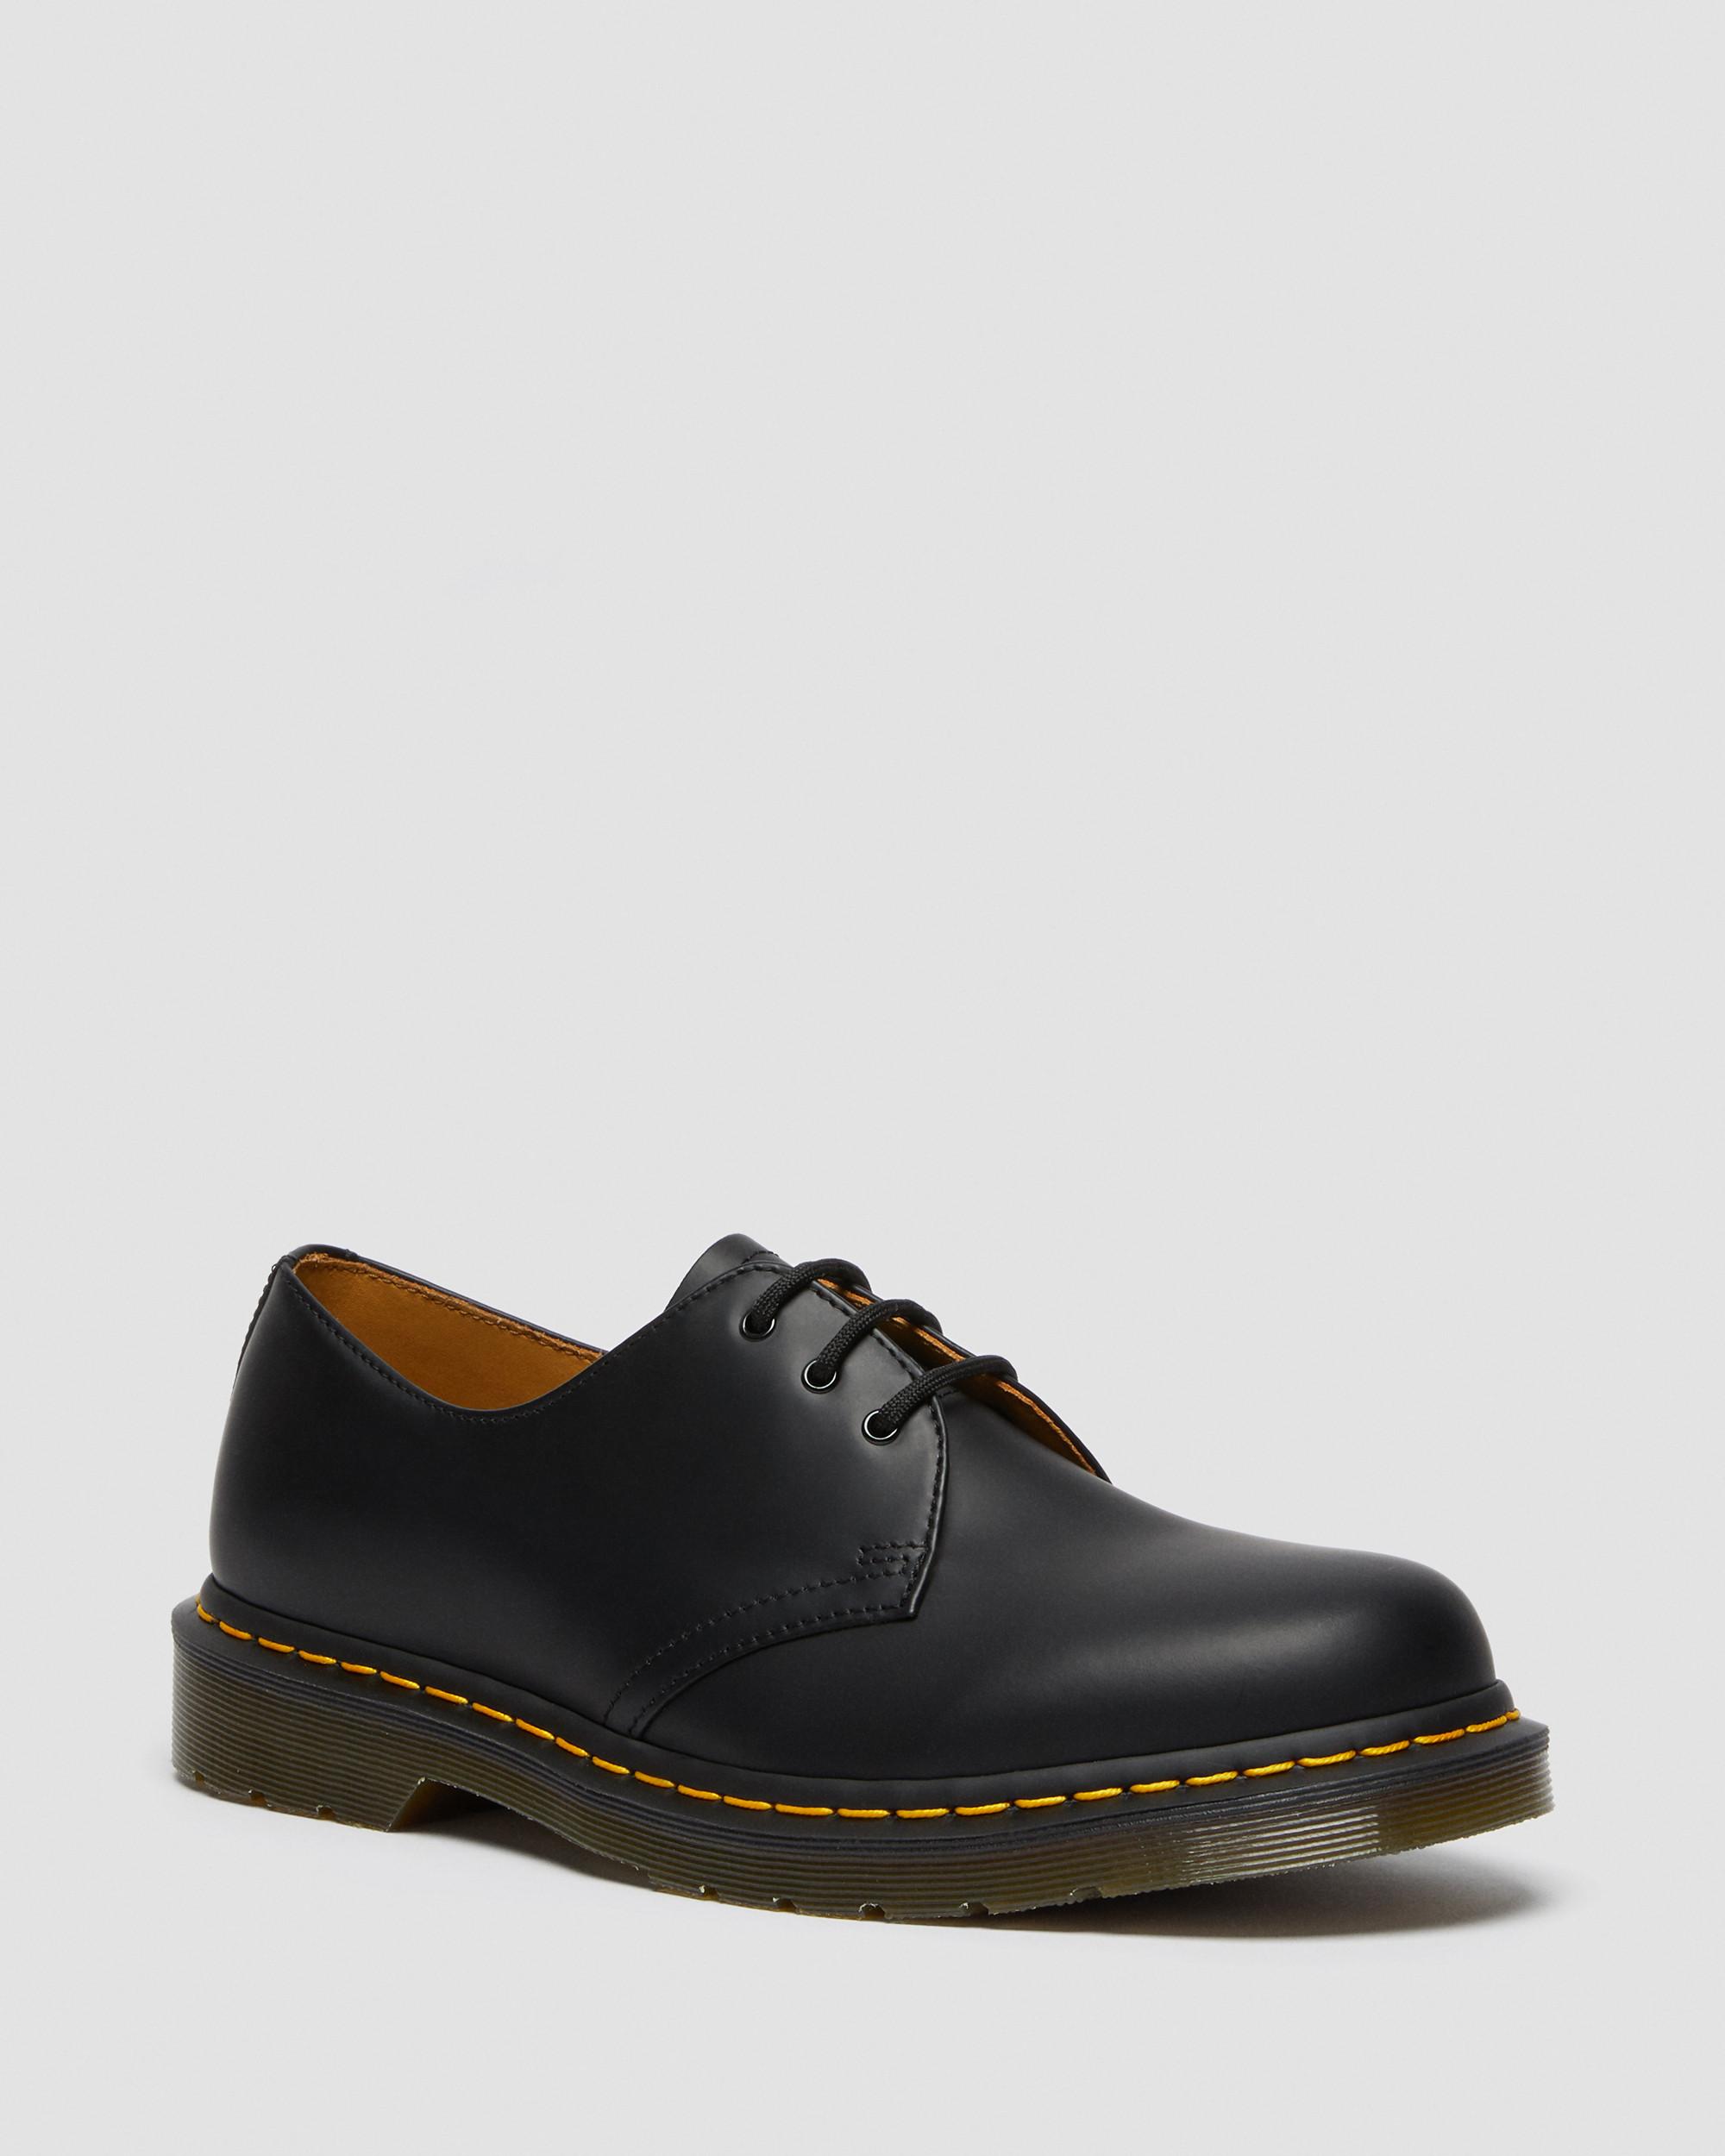 Boots, Shoes \u0026 Sandals | Dr. Martens 